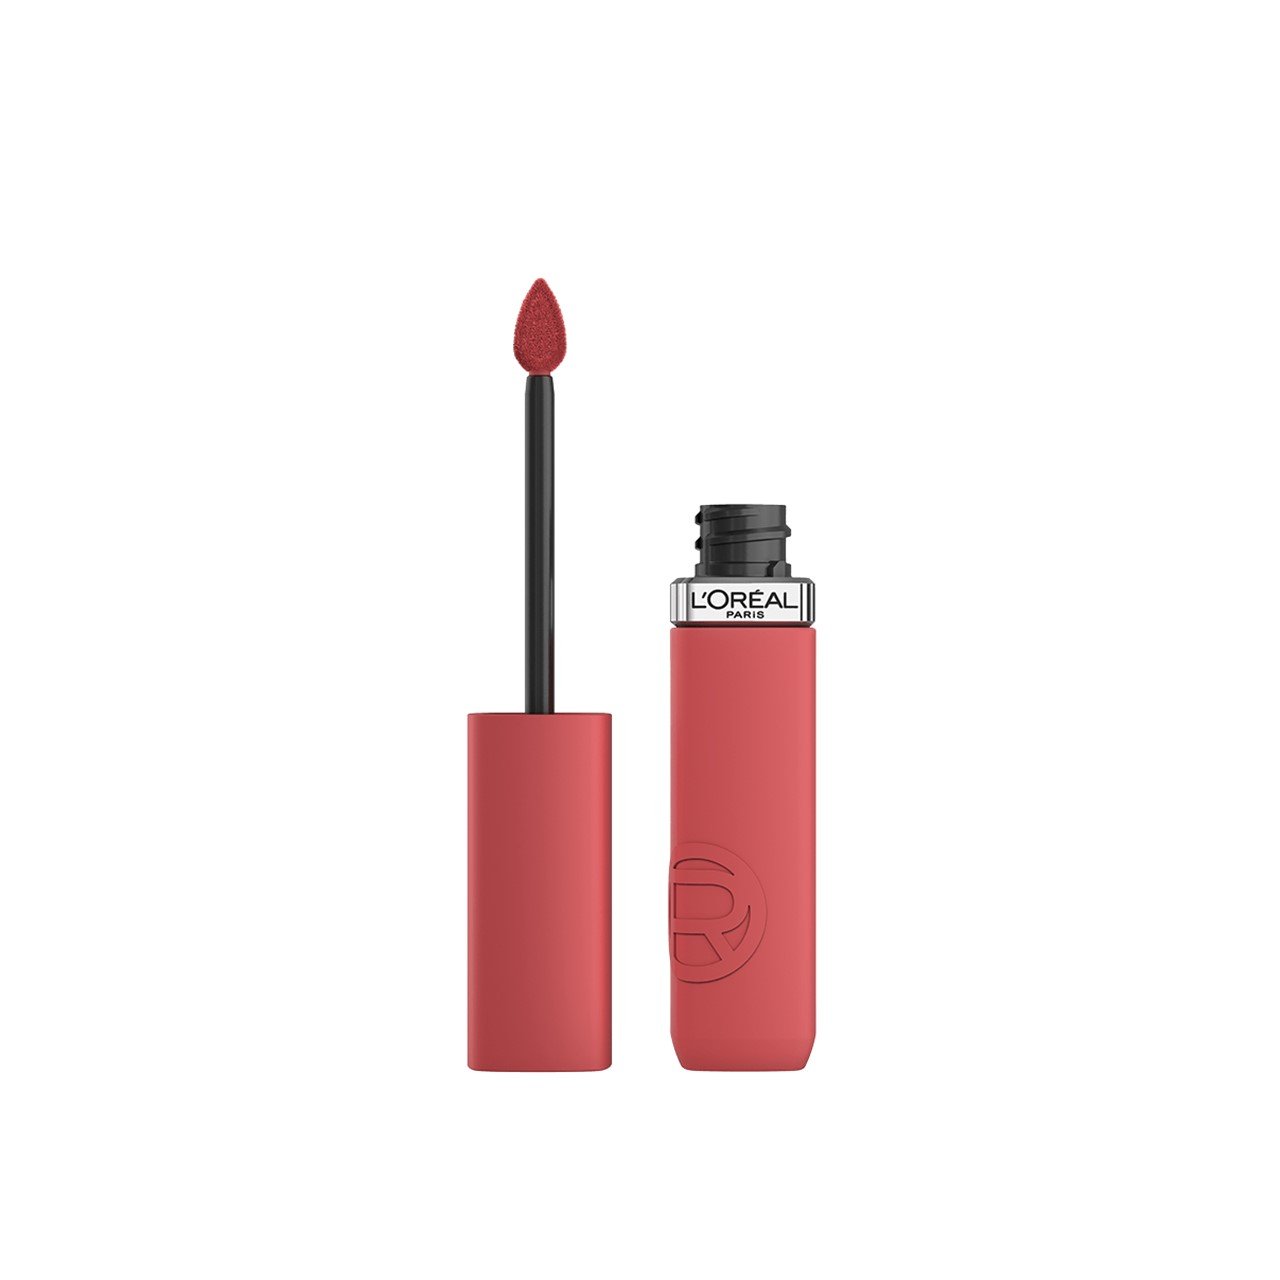 L'Oréal Paris Infallible Matte Resistance Liquid Lipstick 230 Shopping Spree 5ml